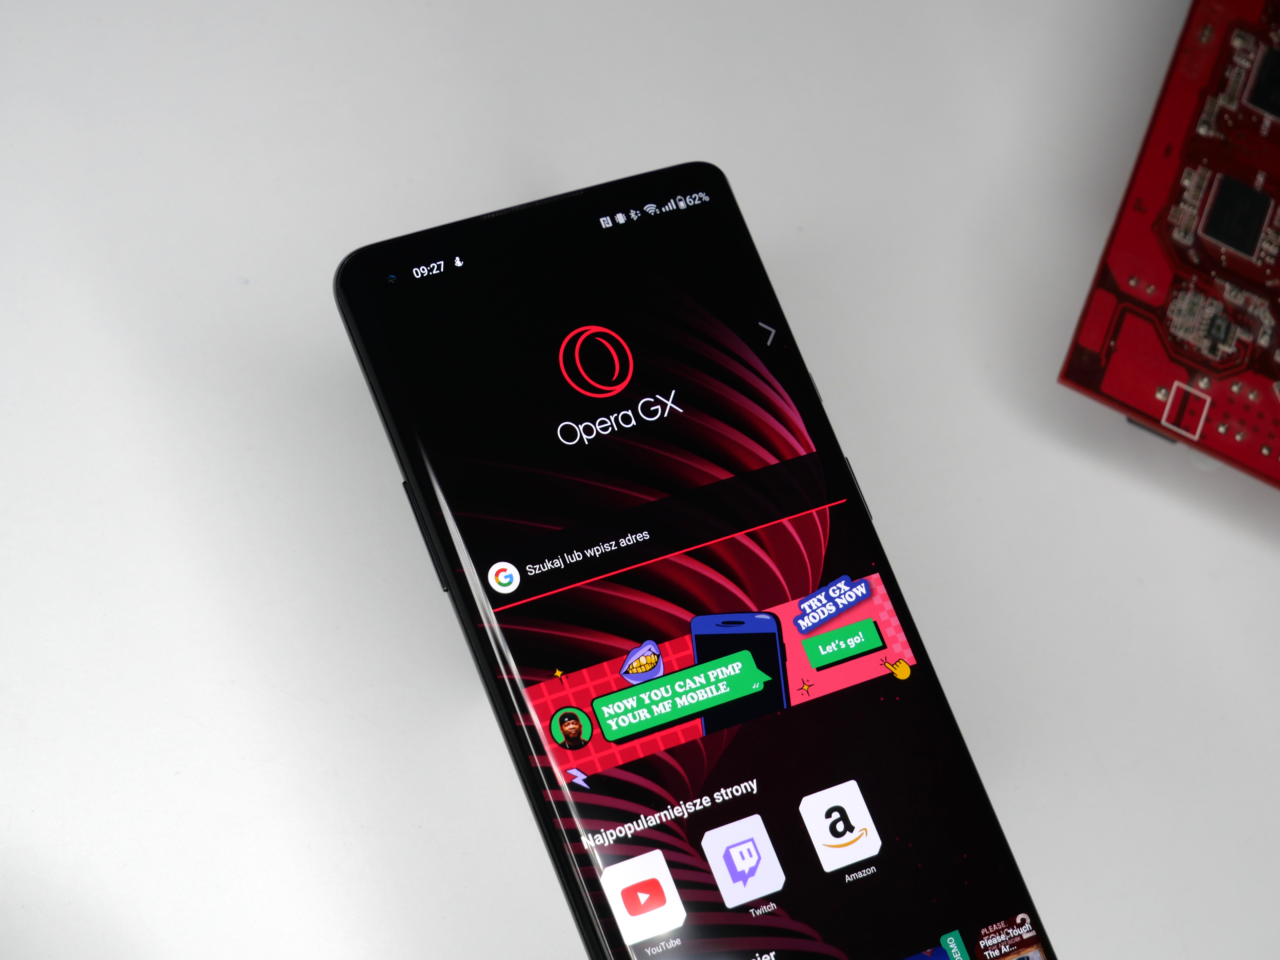 Smartfon leżący na białym tle z otwartą aplikacją przeglądarki Opera GX na ekranie, obok częściowo widocznych elektronicznych komponentów na czerwonym pcb.